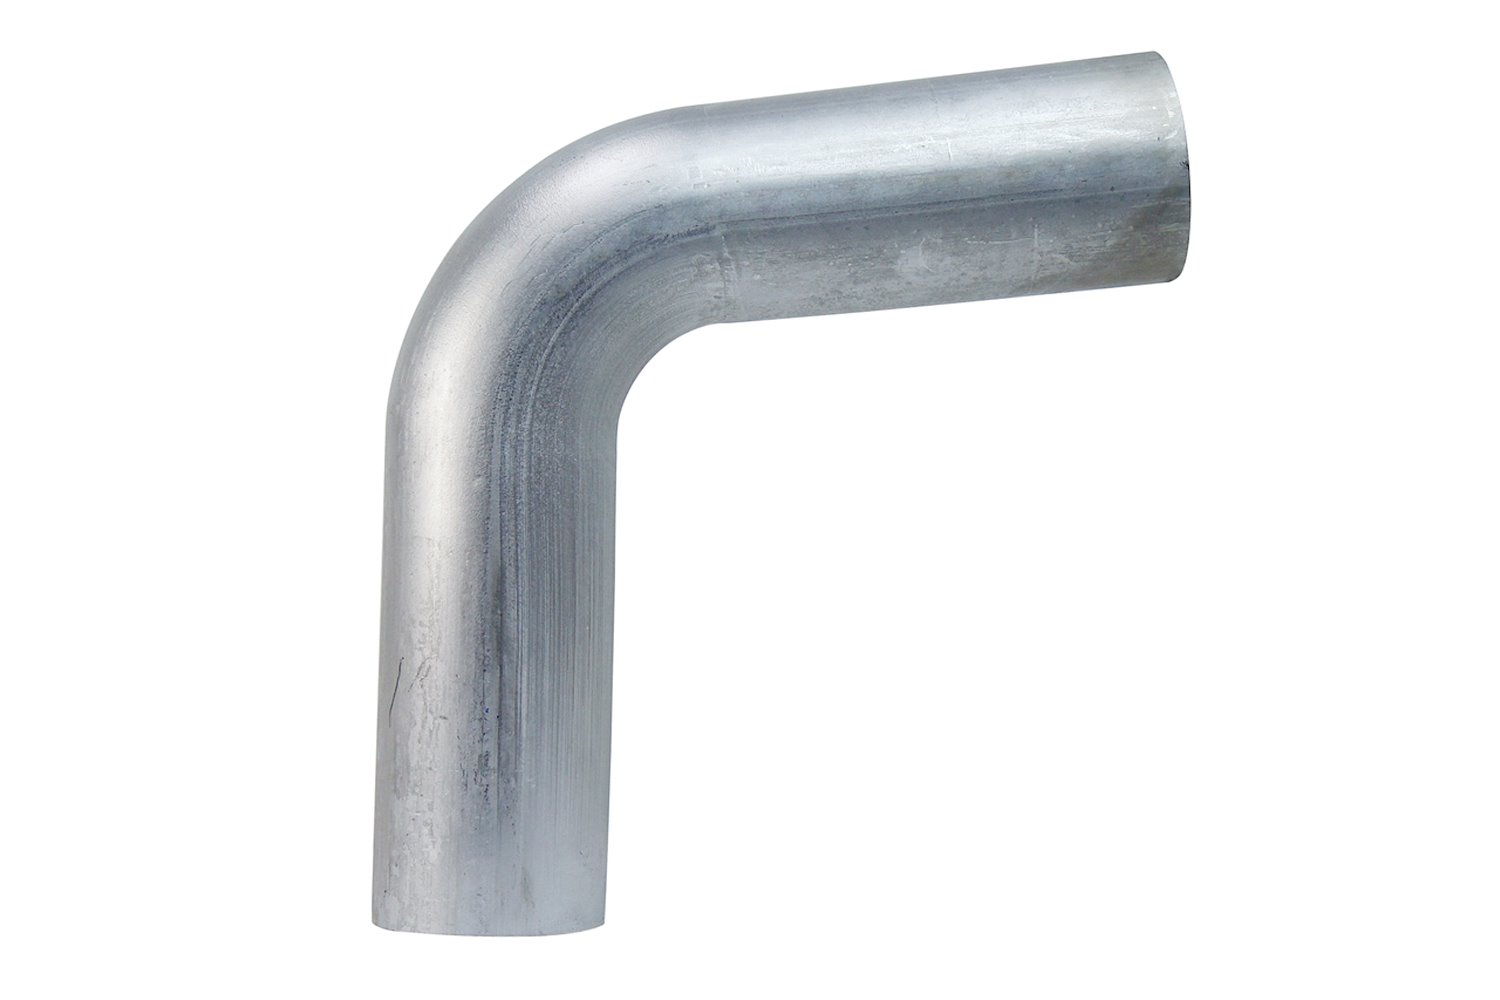 AT80-225-CLR-3 Aluminum Elbow Tube, 6061 Aluminum, 80-Degree Bend Elbow Tubing, 2-1/4 in. OD, Large Radius, 3 in. CLR